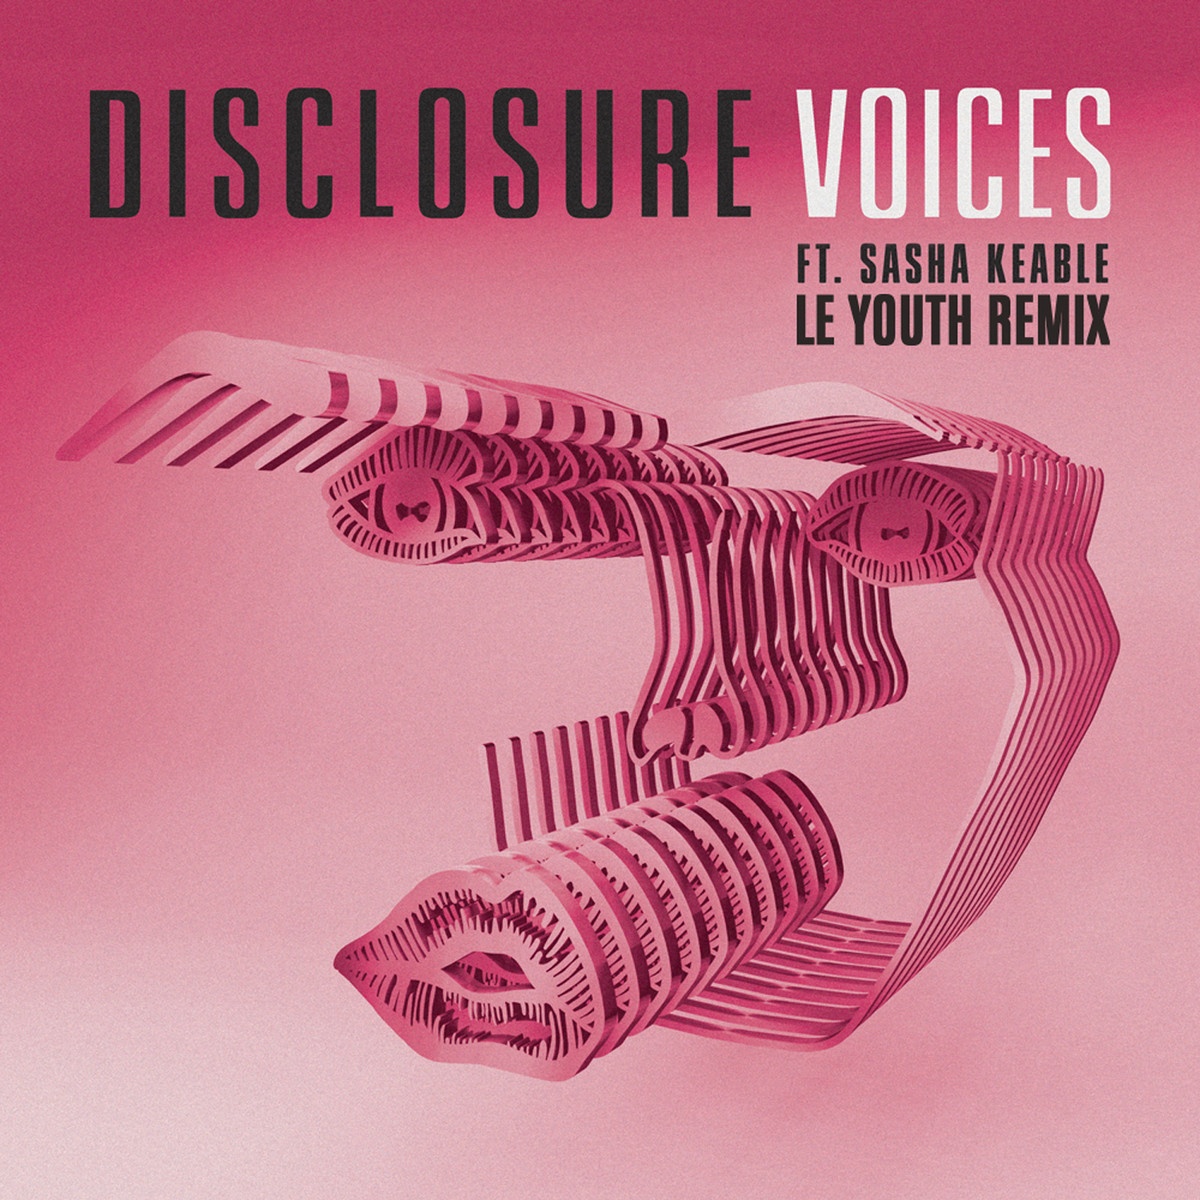 Voices (Le Youth Remix)